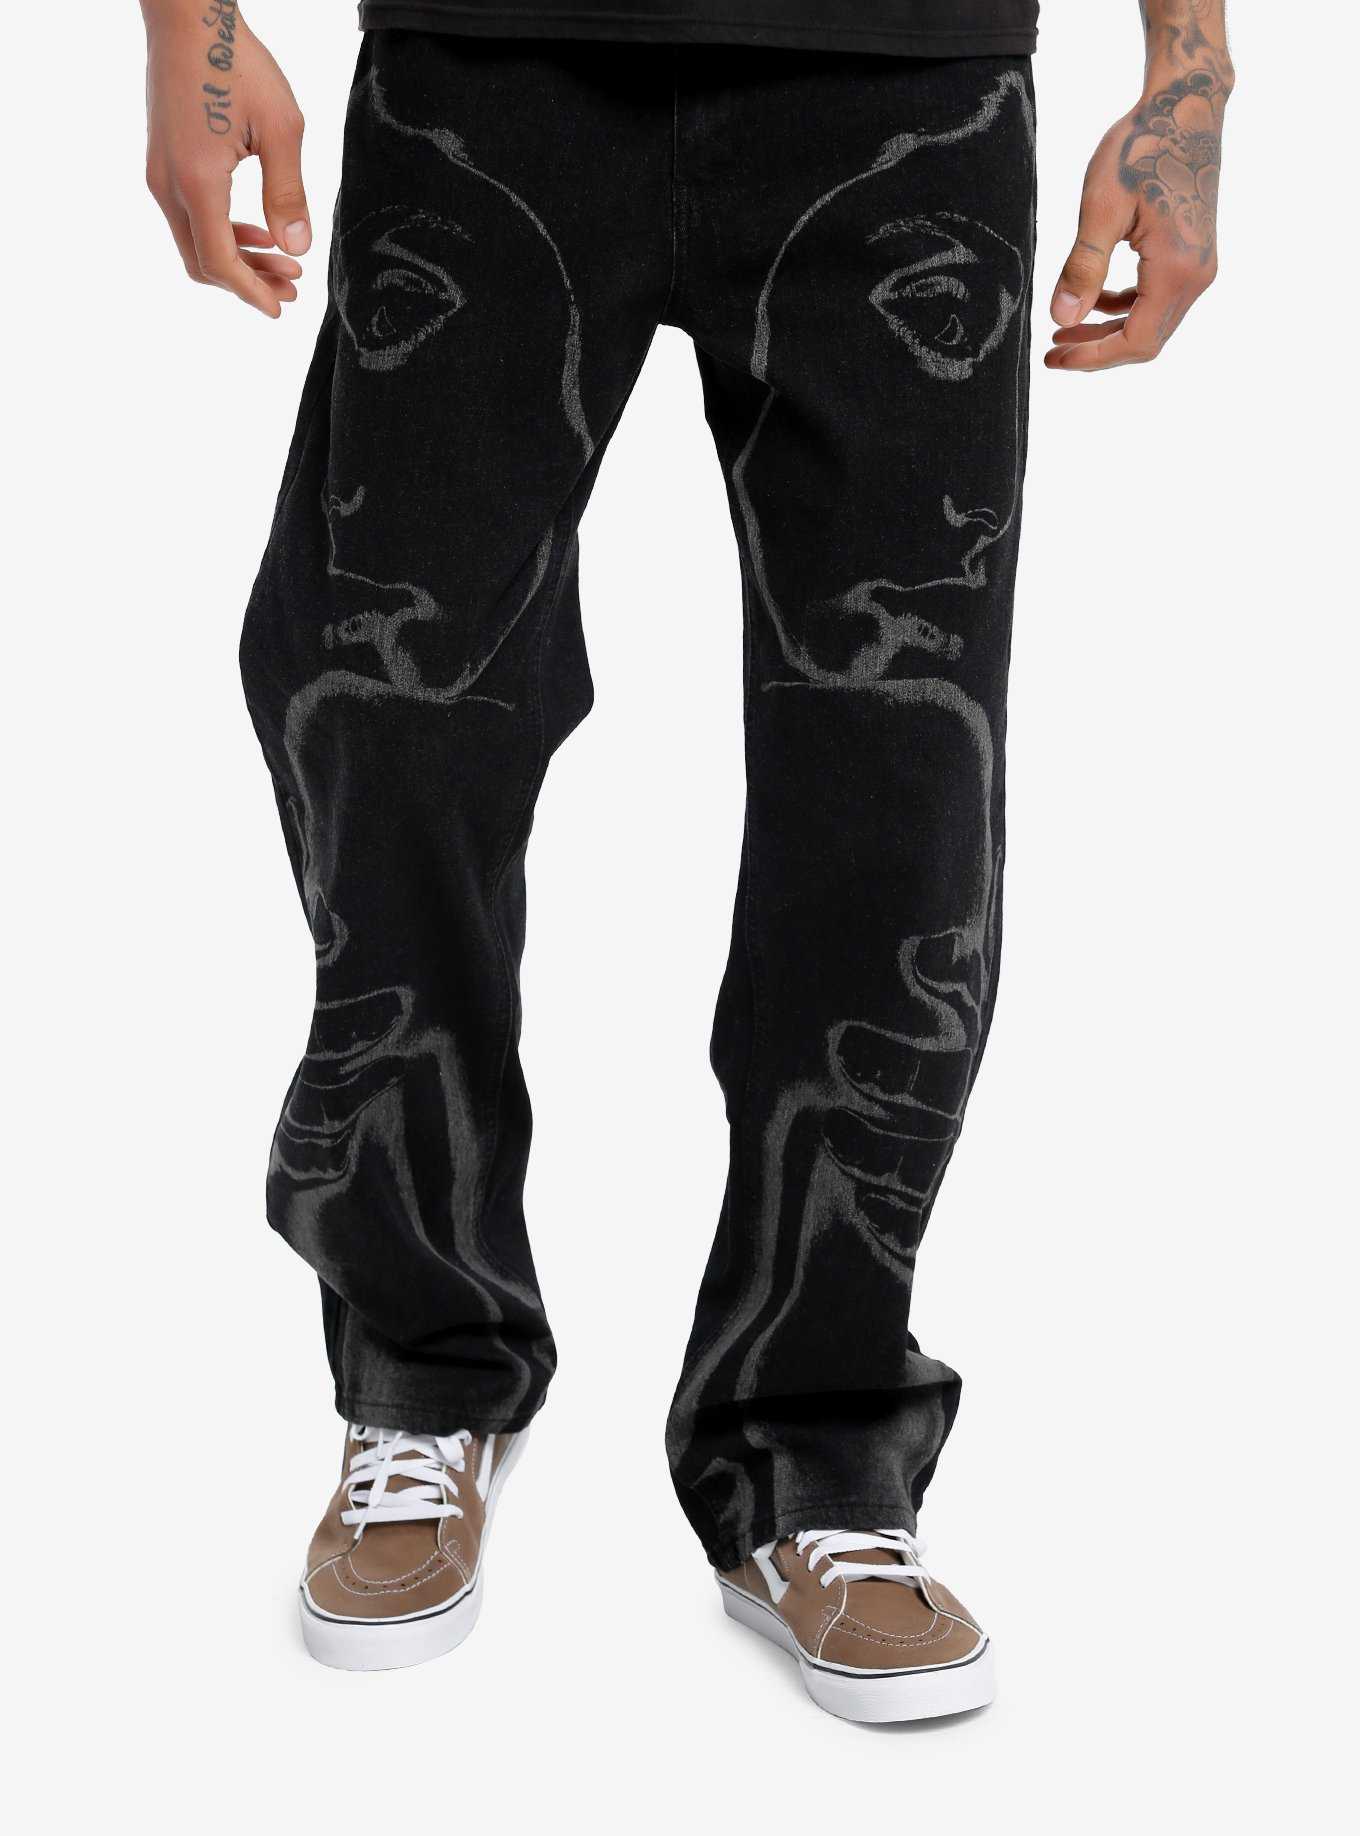 Guys' Pants: Khaki, Colored, Black & Plaid Pants